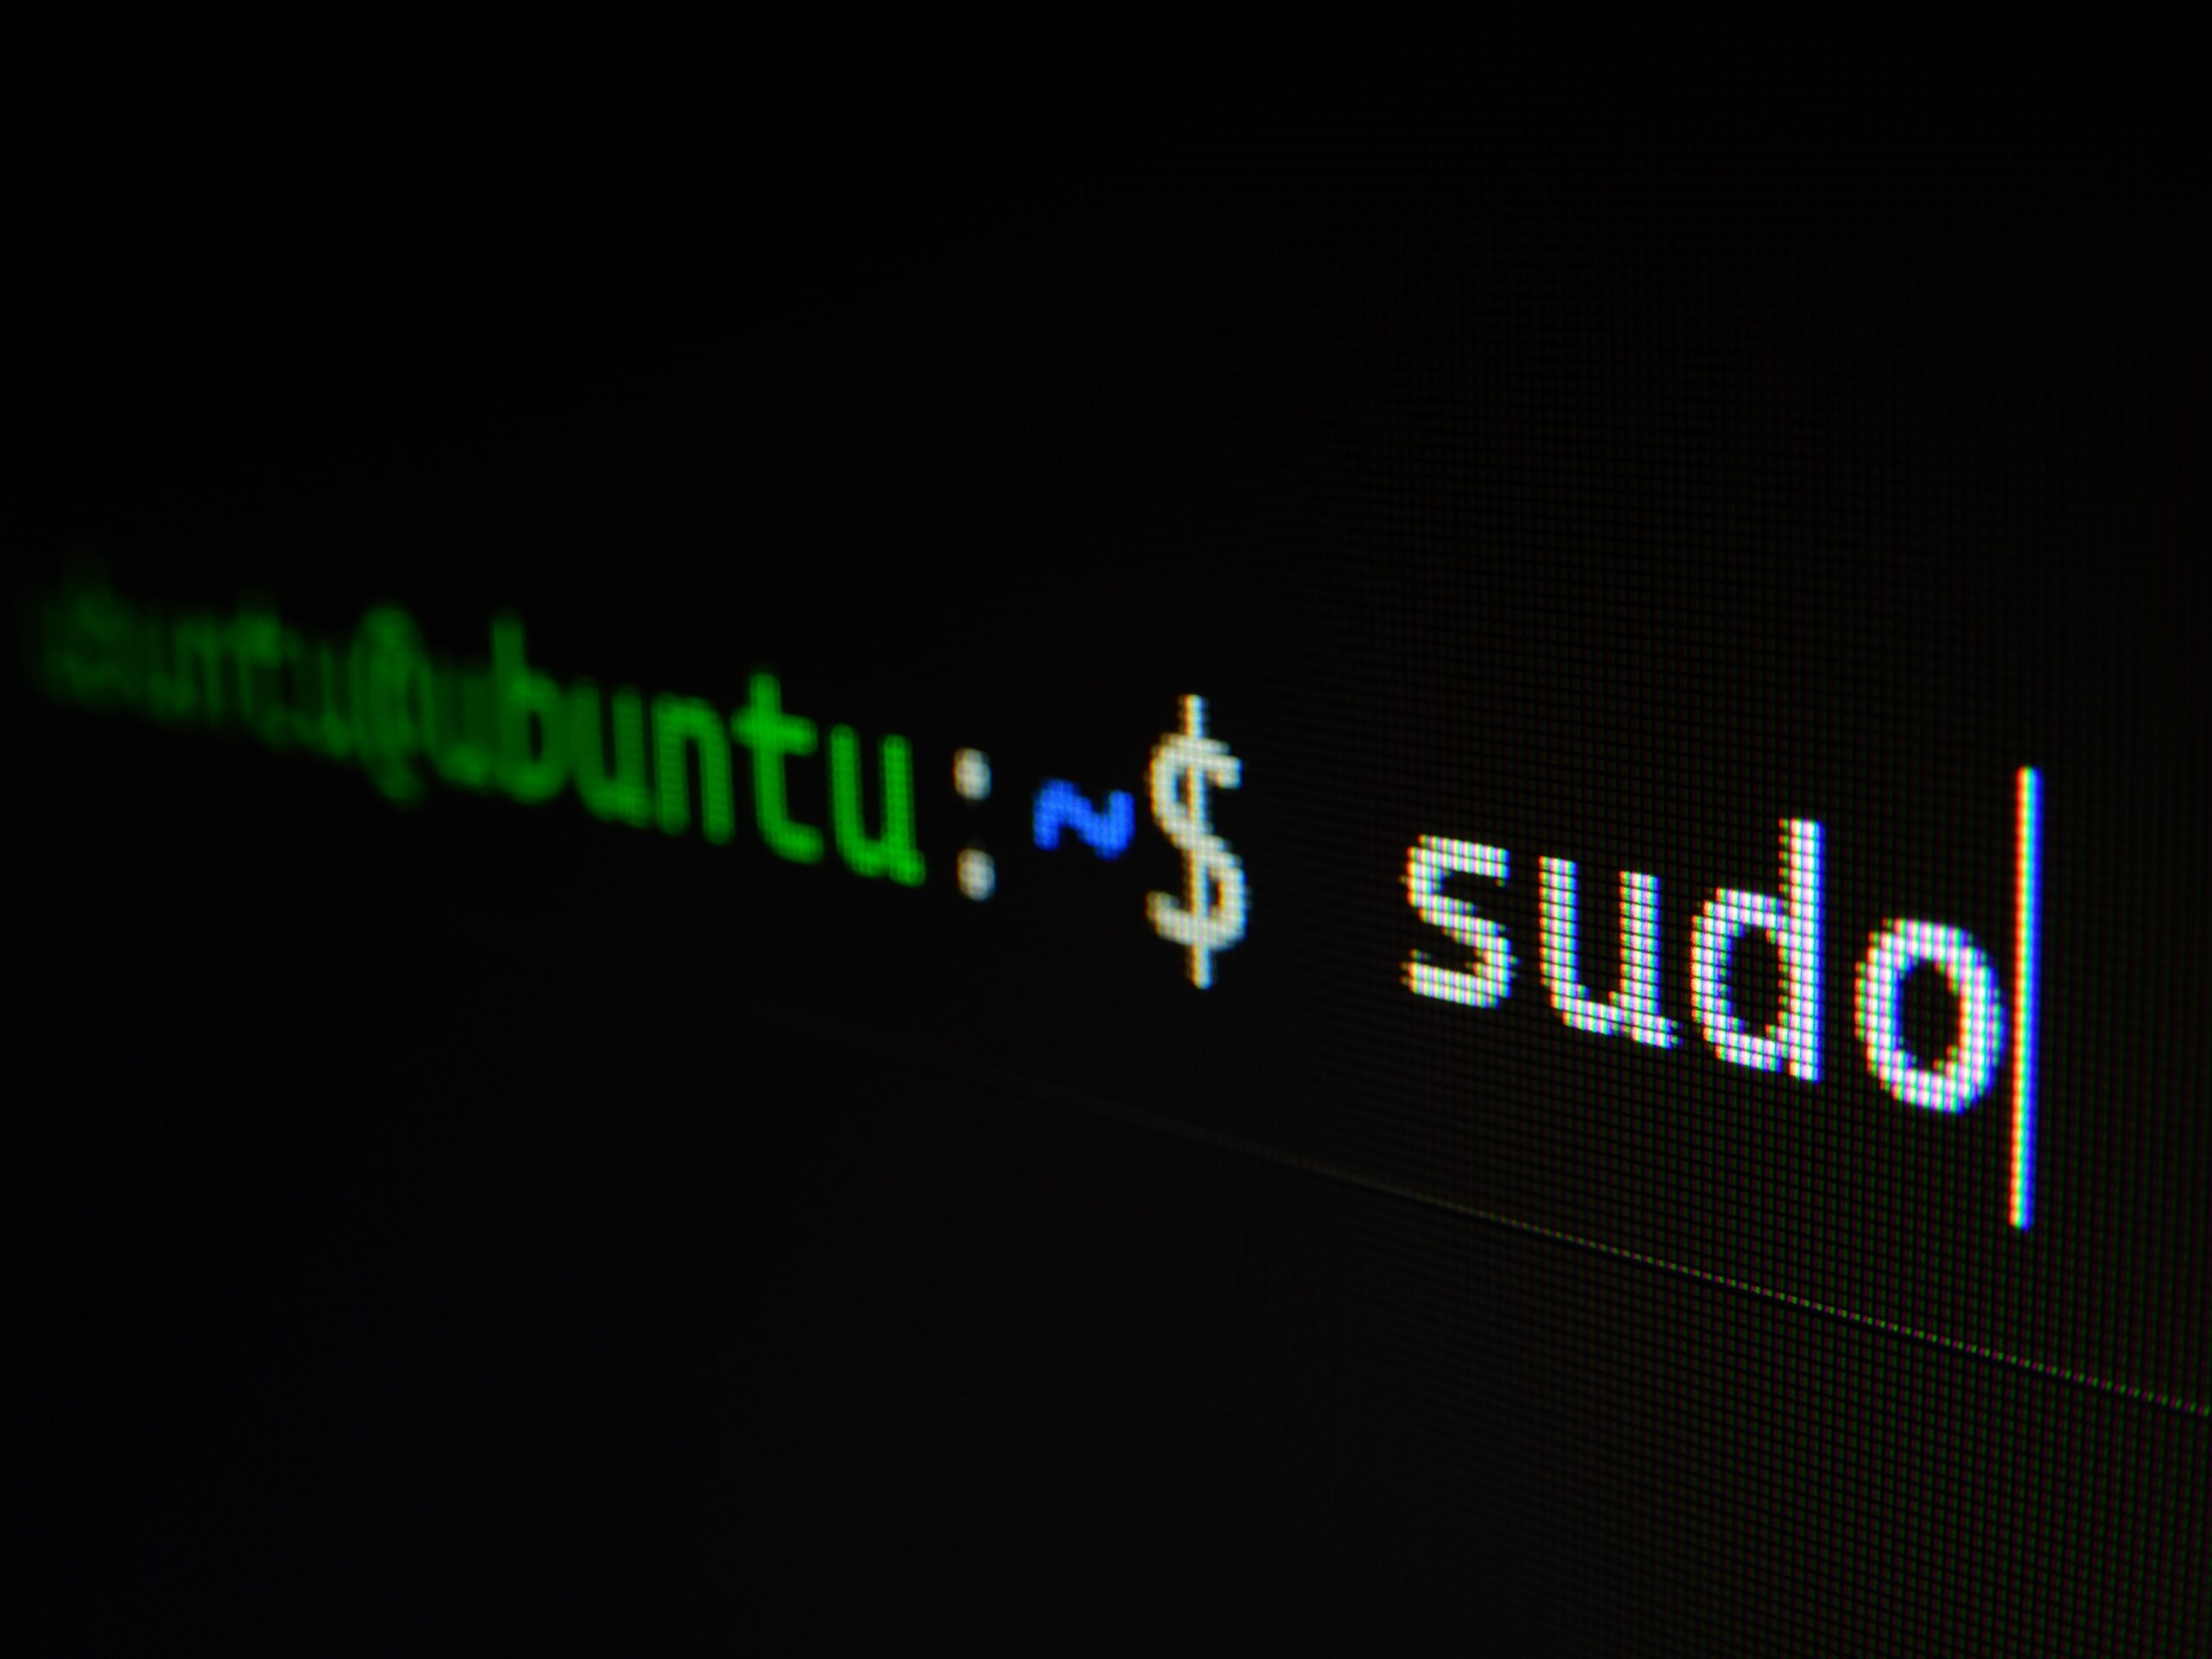 什么是 sudo，为什么它如此重要？